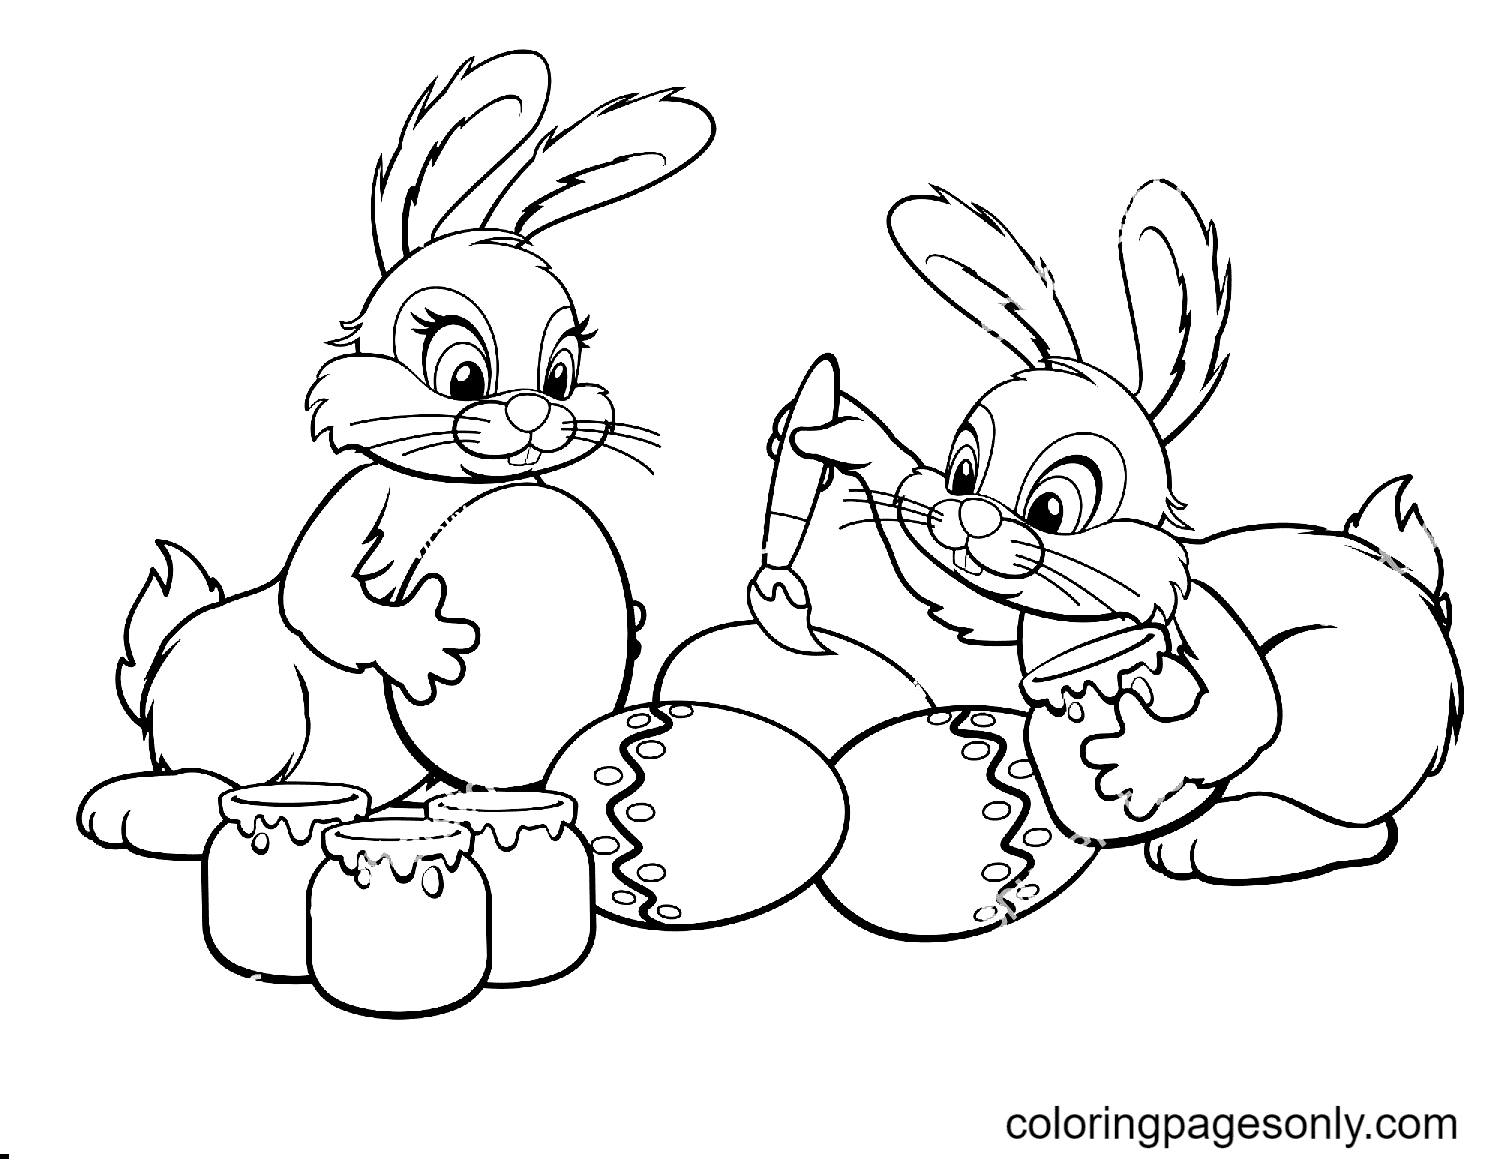 两只复活节兔子从复活节兔子身上取出鸡蛋